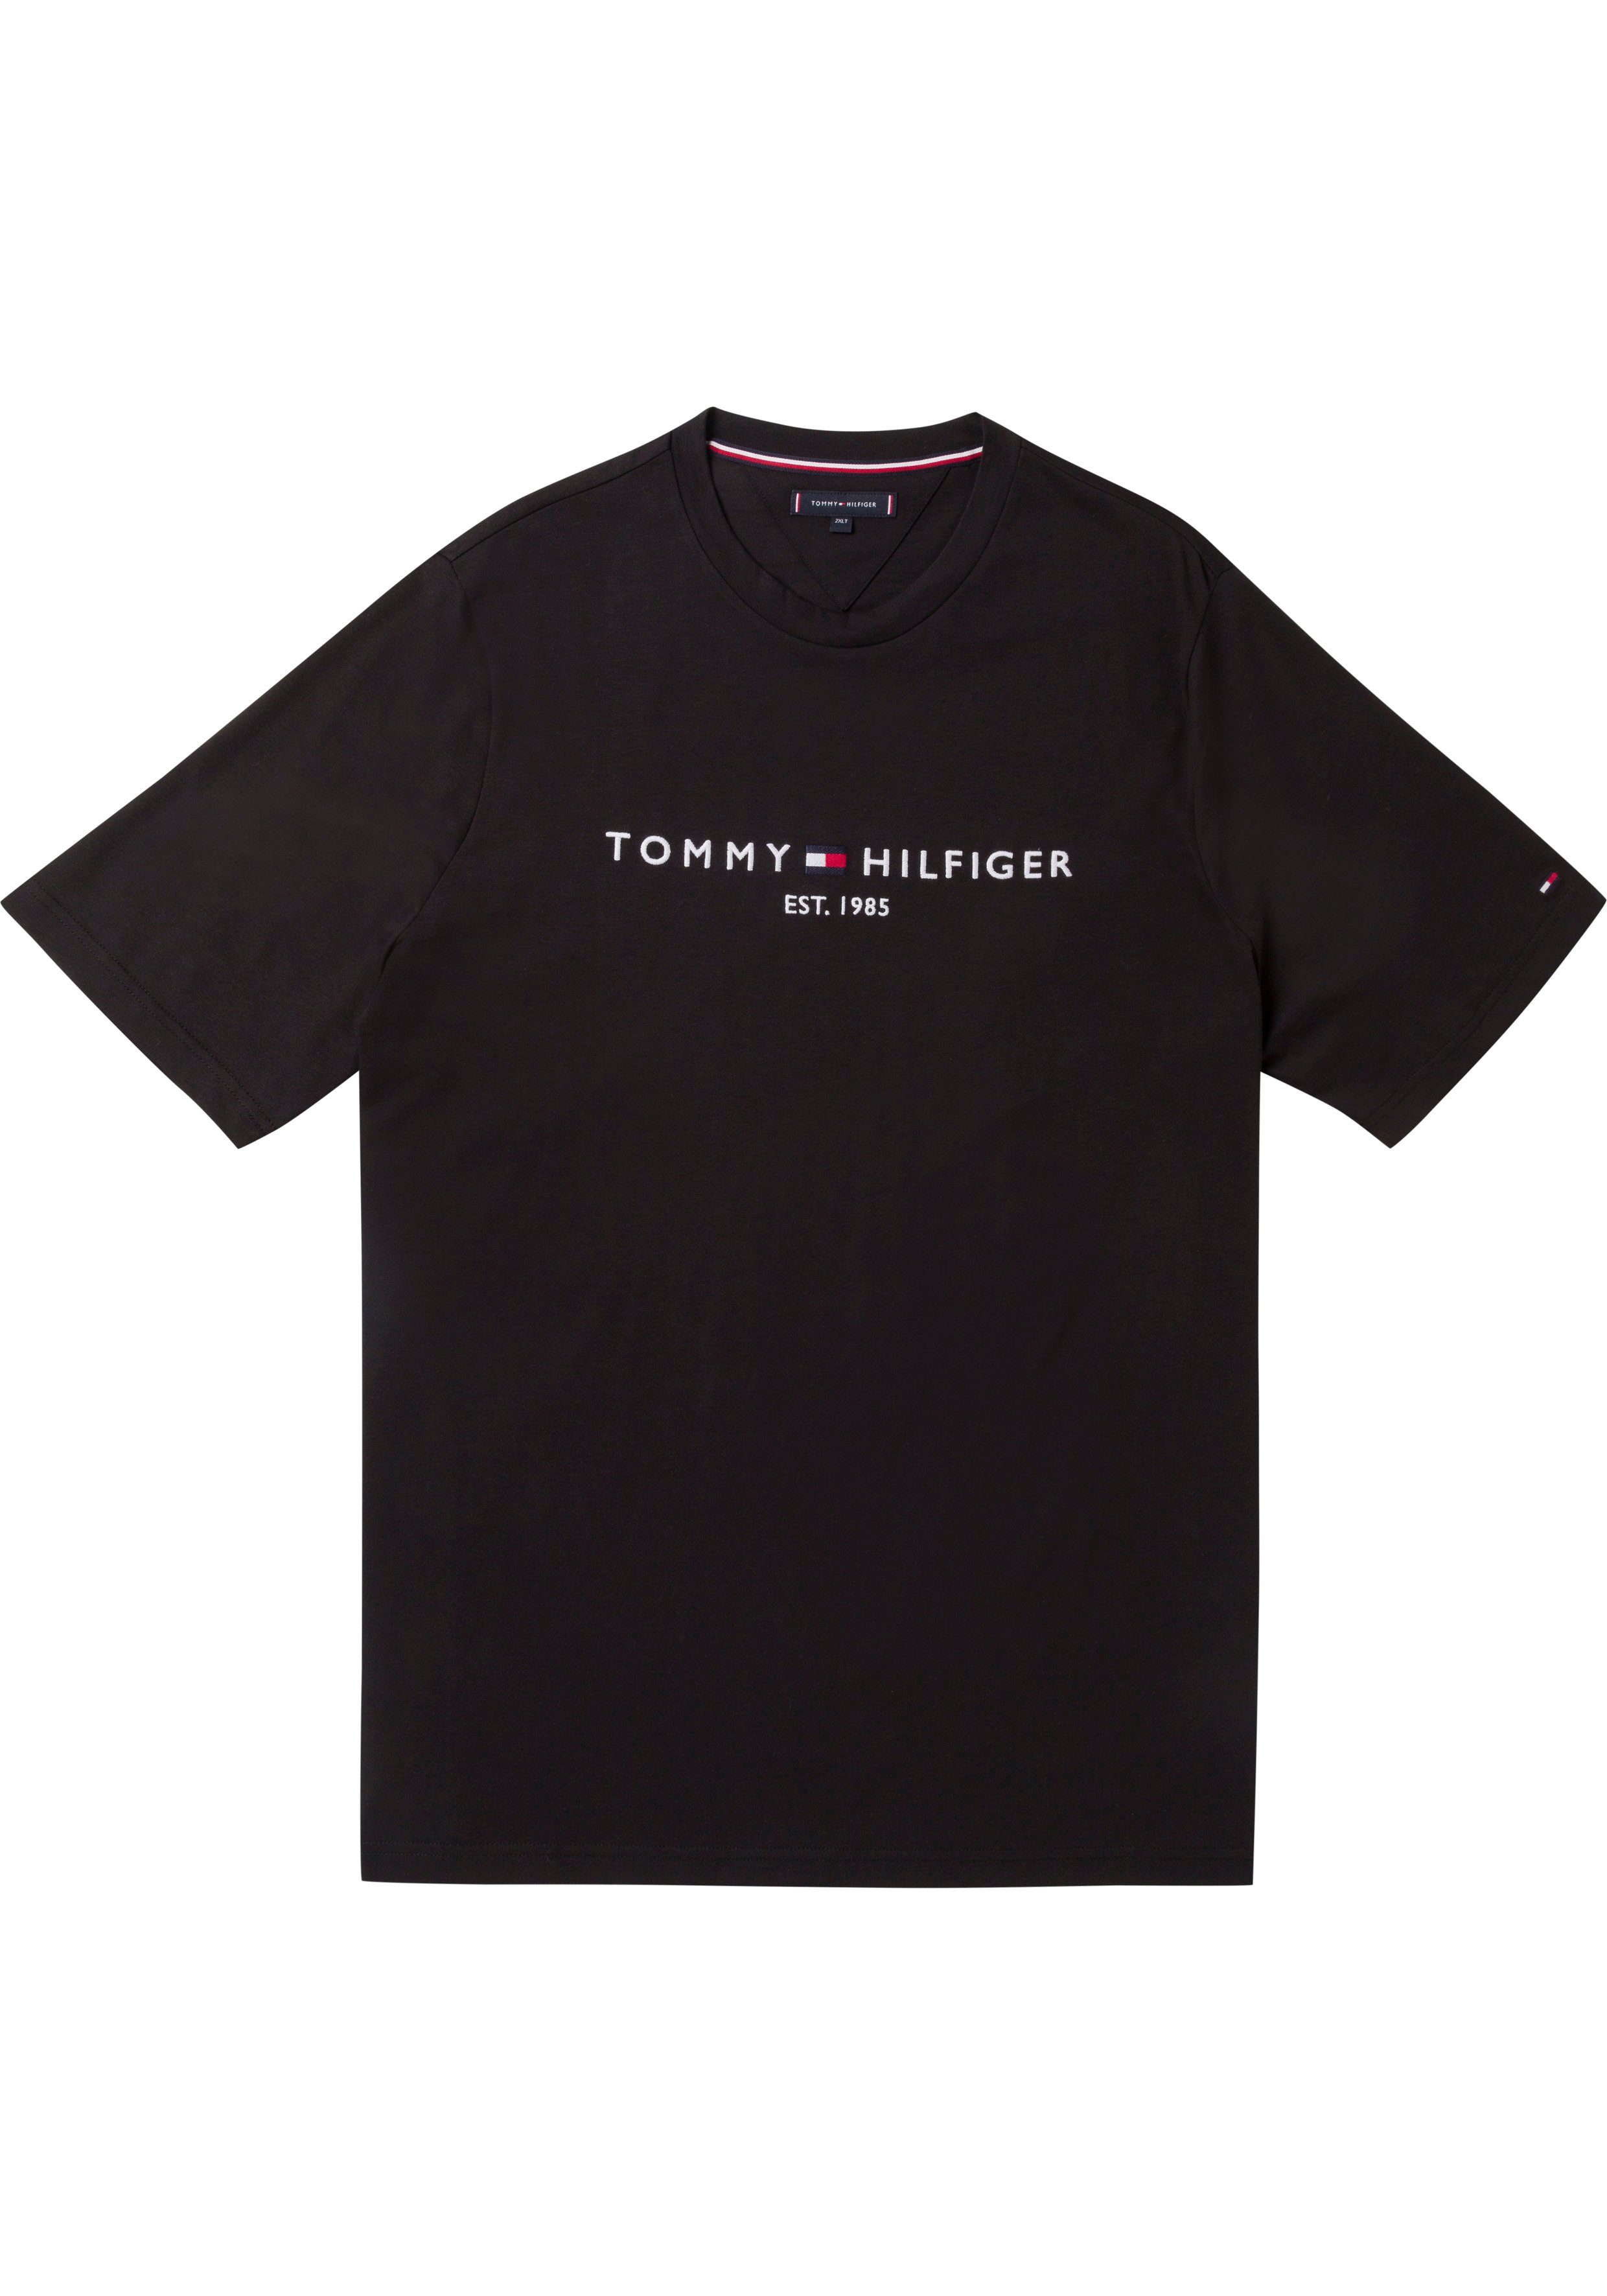 Logoschriftzug mit T-Shirt Hilfiger TEE-B Brust LOGO Tommy Big Tall Tommy BT-TOMMY schwarz Hilfiger der auf &